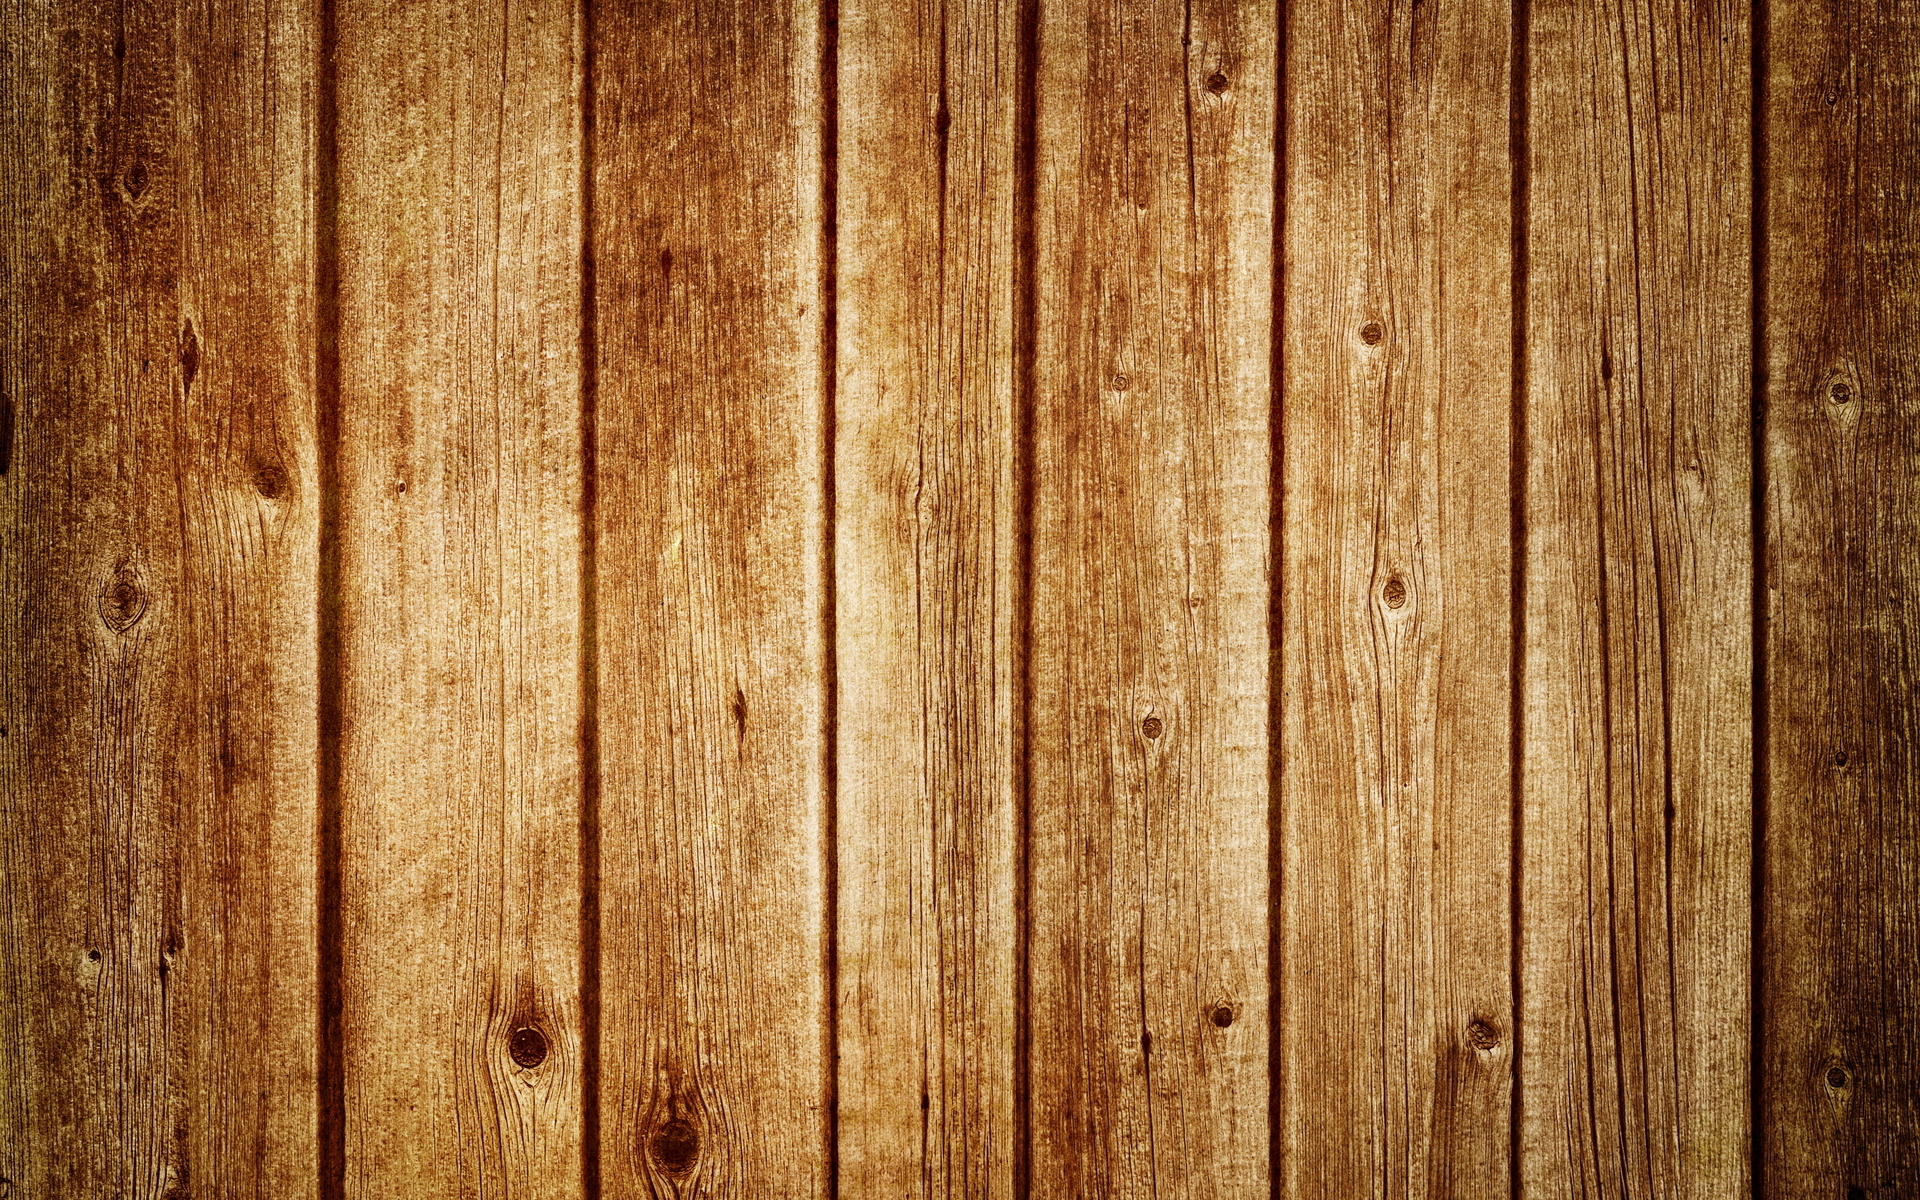 Buy Wood Wallpaper | Buy Peel and Stick Wood Wallpaper